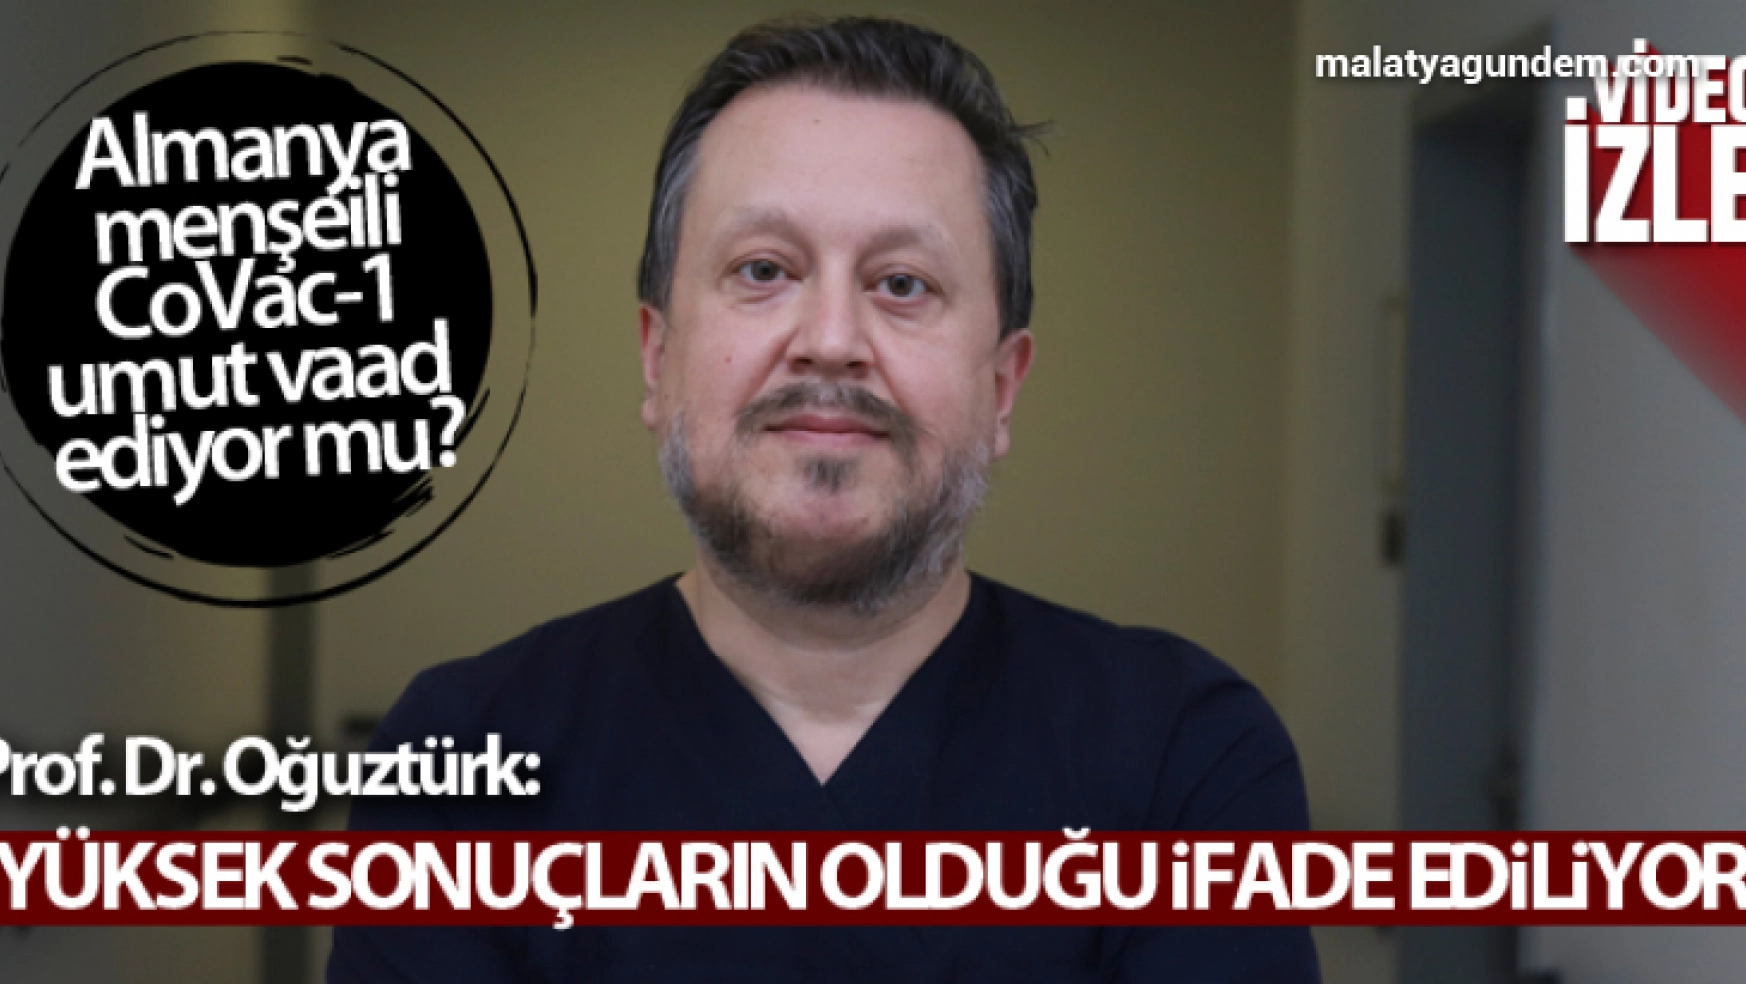 Prof. Dr. Oğuztürk'ten CoVac-1 açıklaması: 'Yüksek sonuçların olduğu ifade ediliyor'